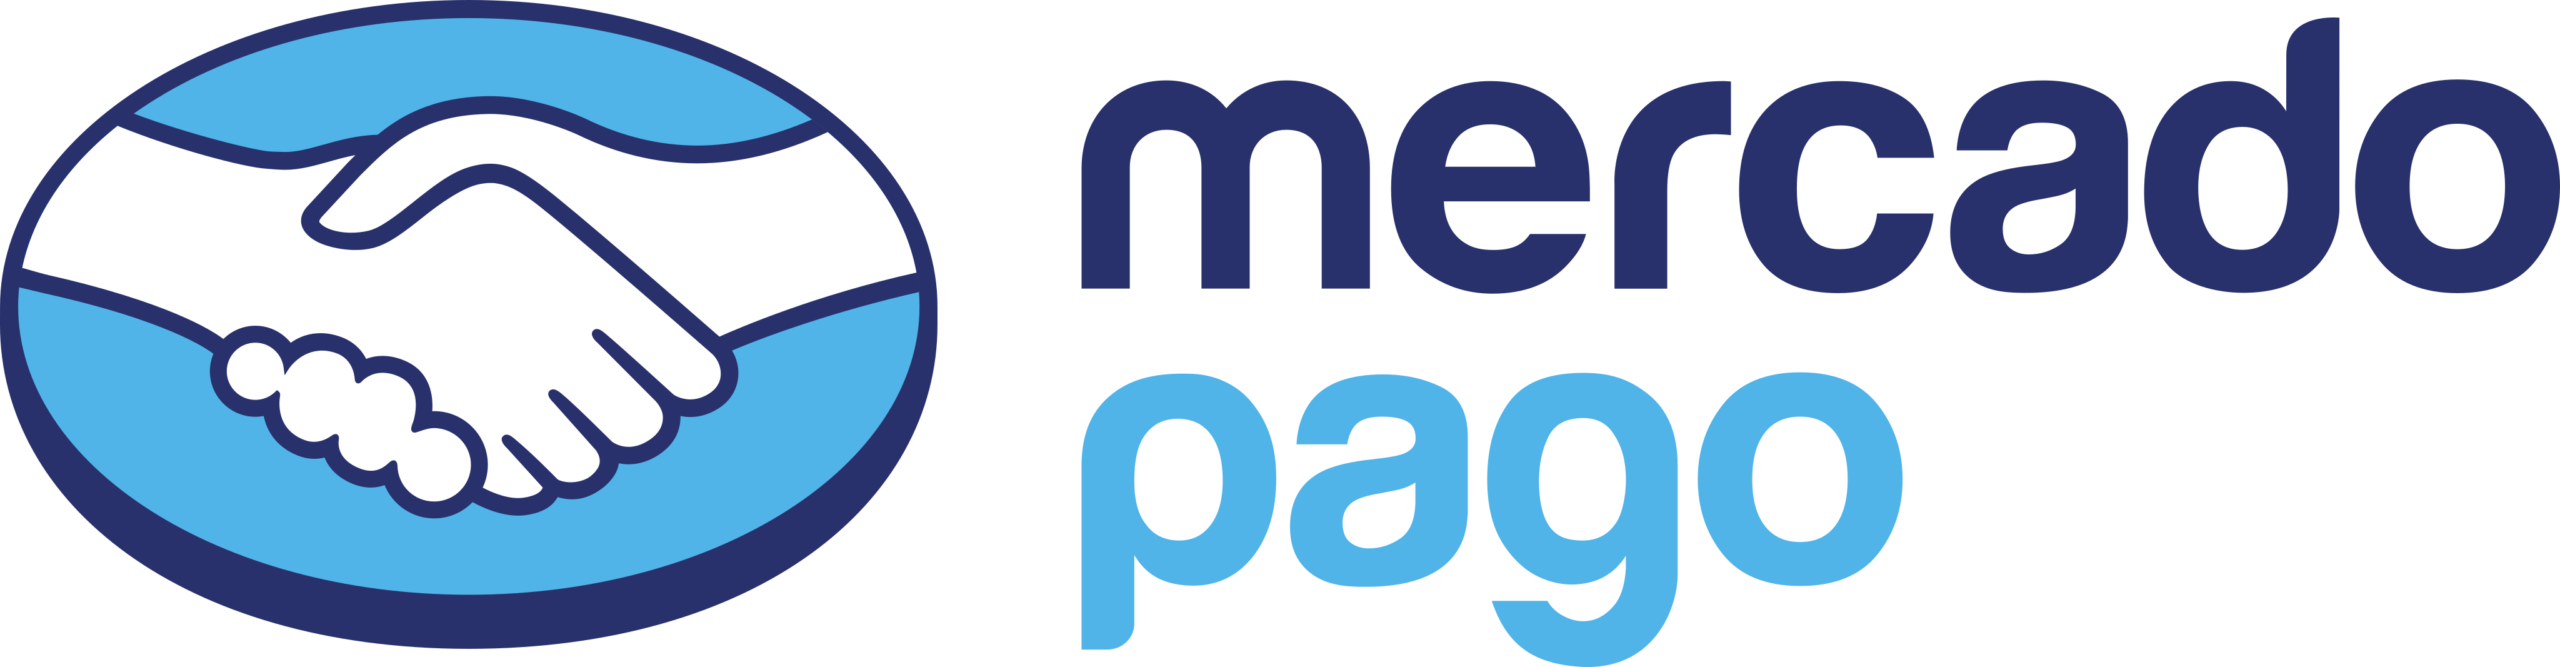 https://poa.hostnet.com.br/wp-content/uploads/2022/07/mercado-pago-logo-scaled.webp